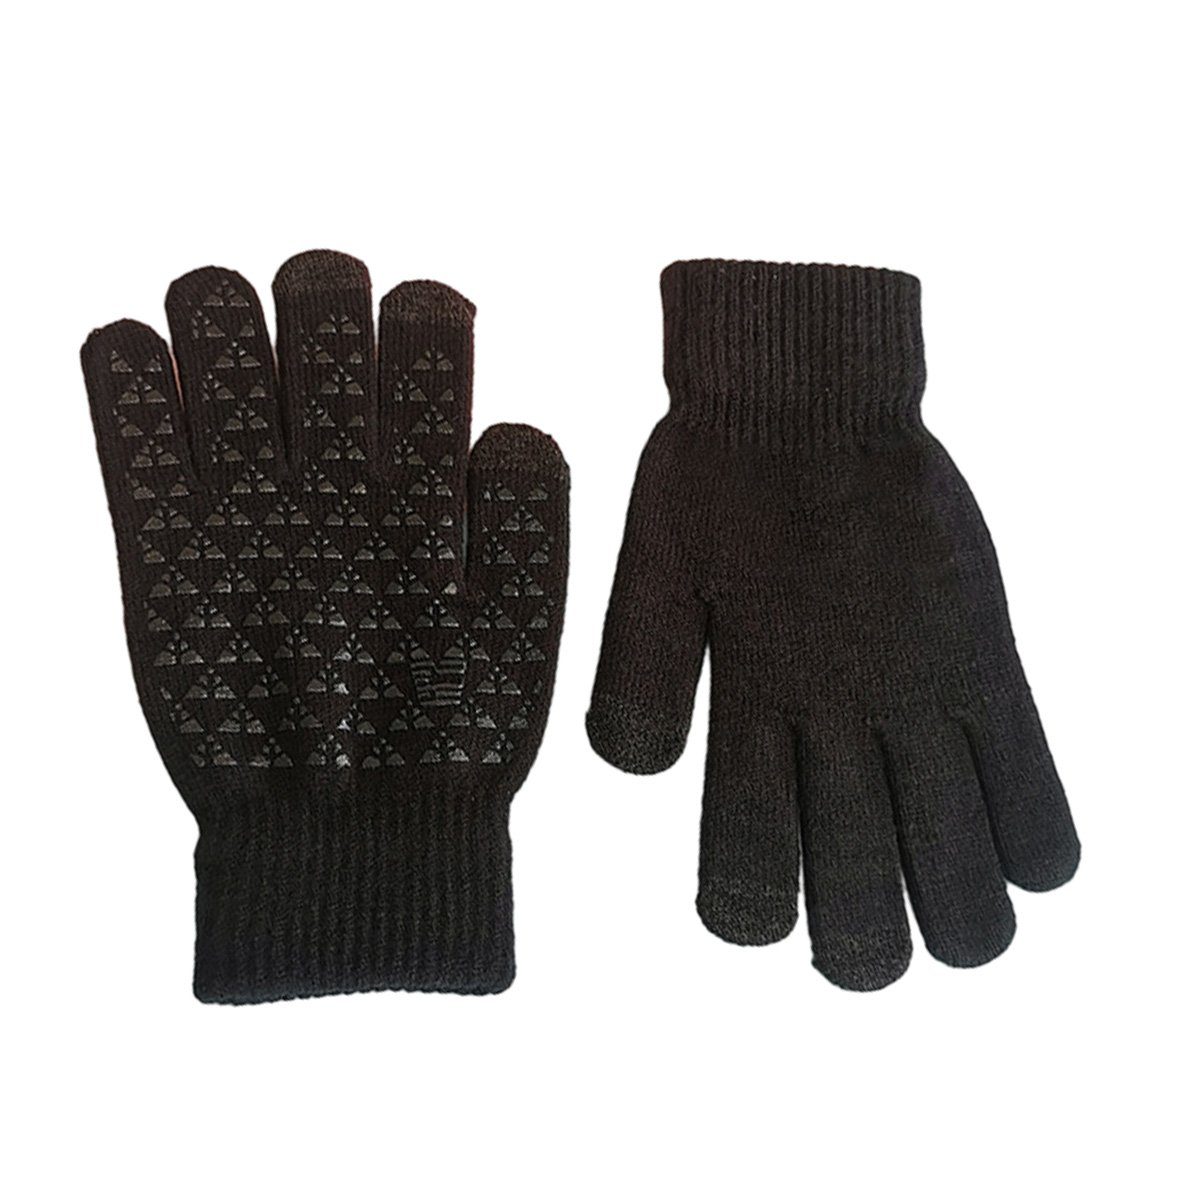 Touchscreen Winterhandschuhe Strickhandschuhe Fingerhandschuhe JedBesetzt Strick Handschuhe Schwarz